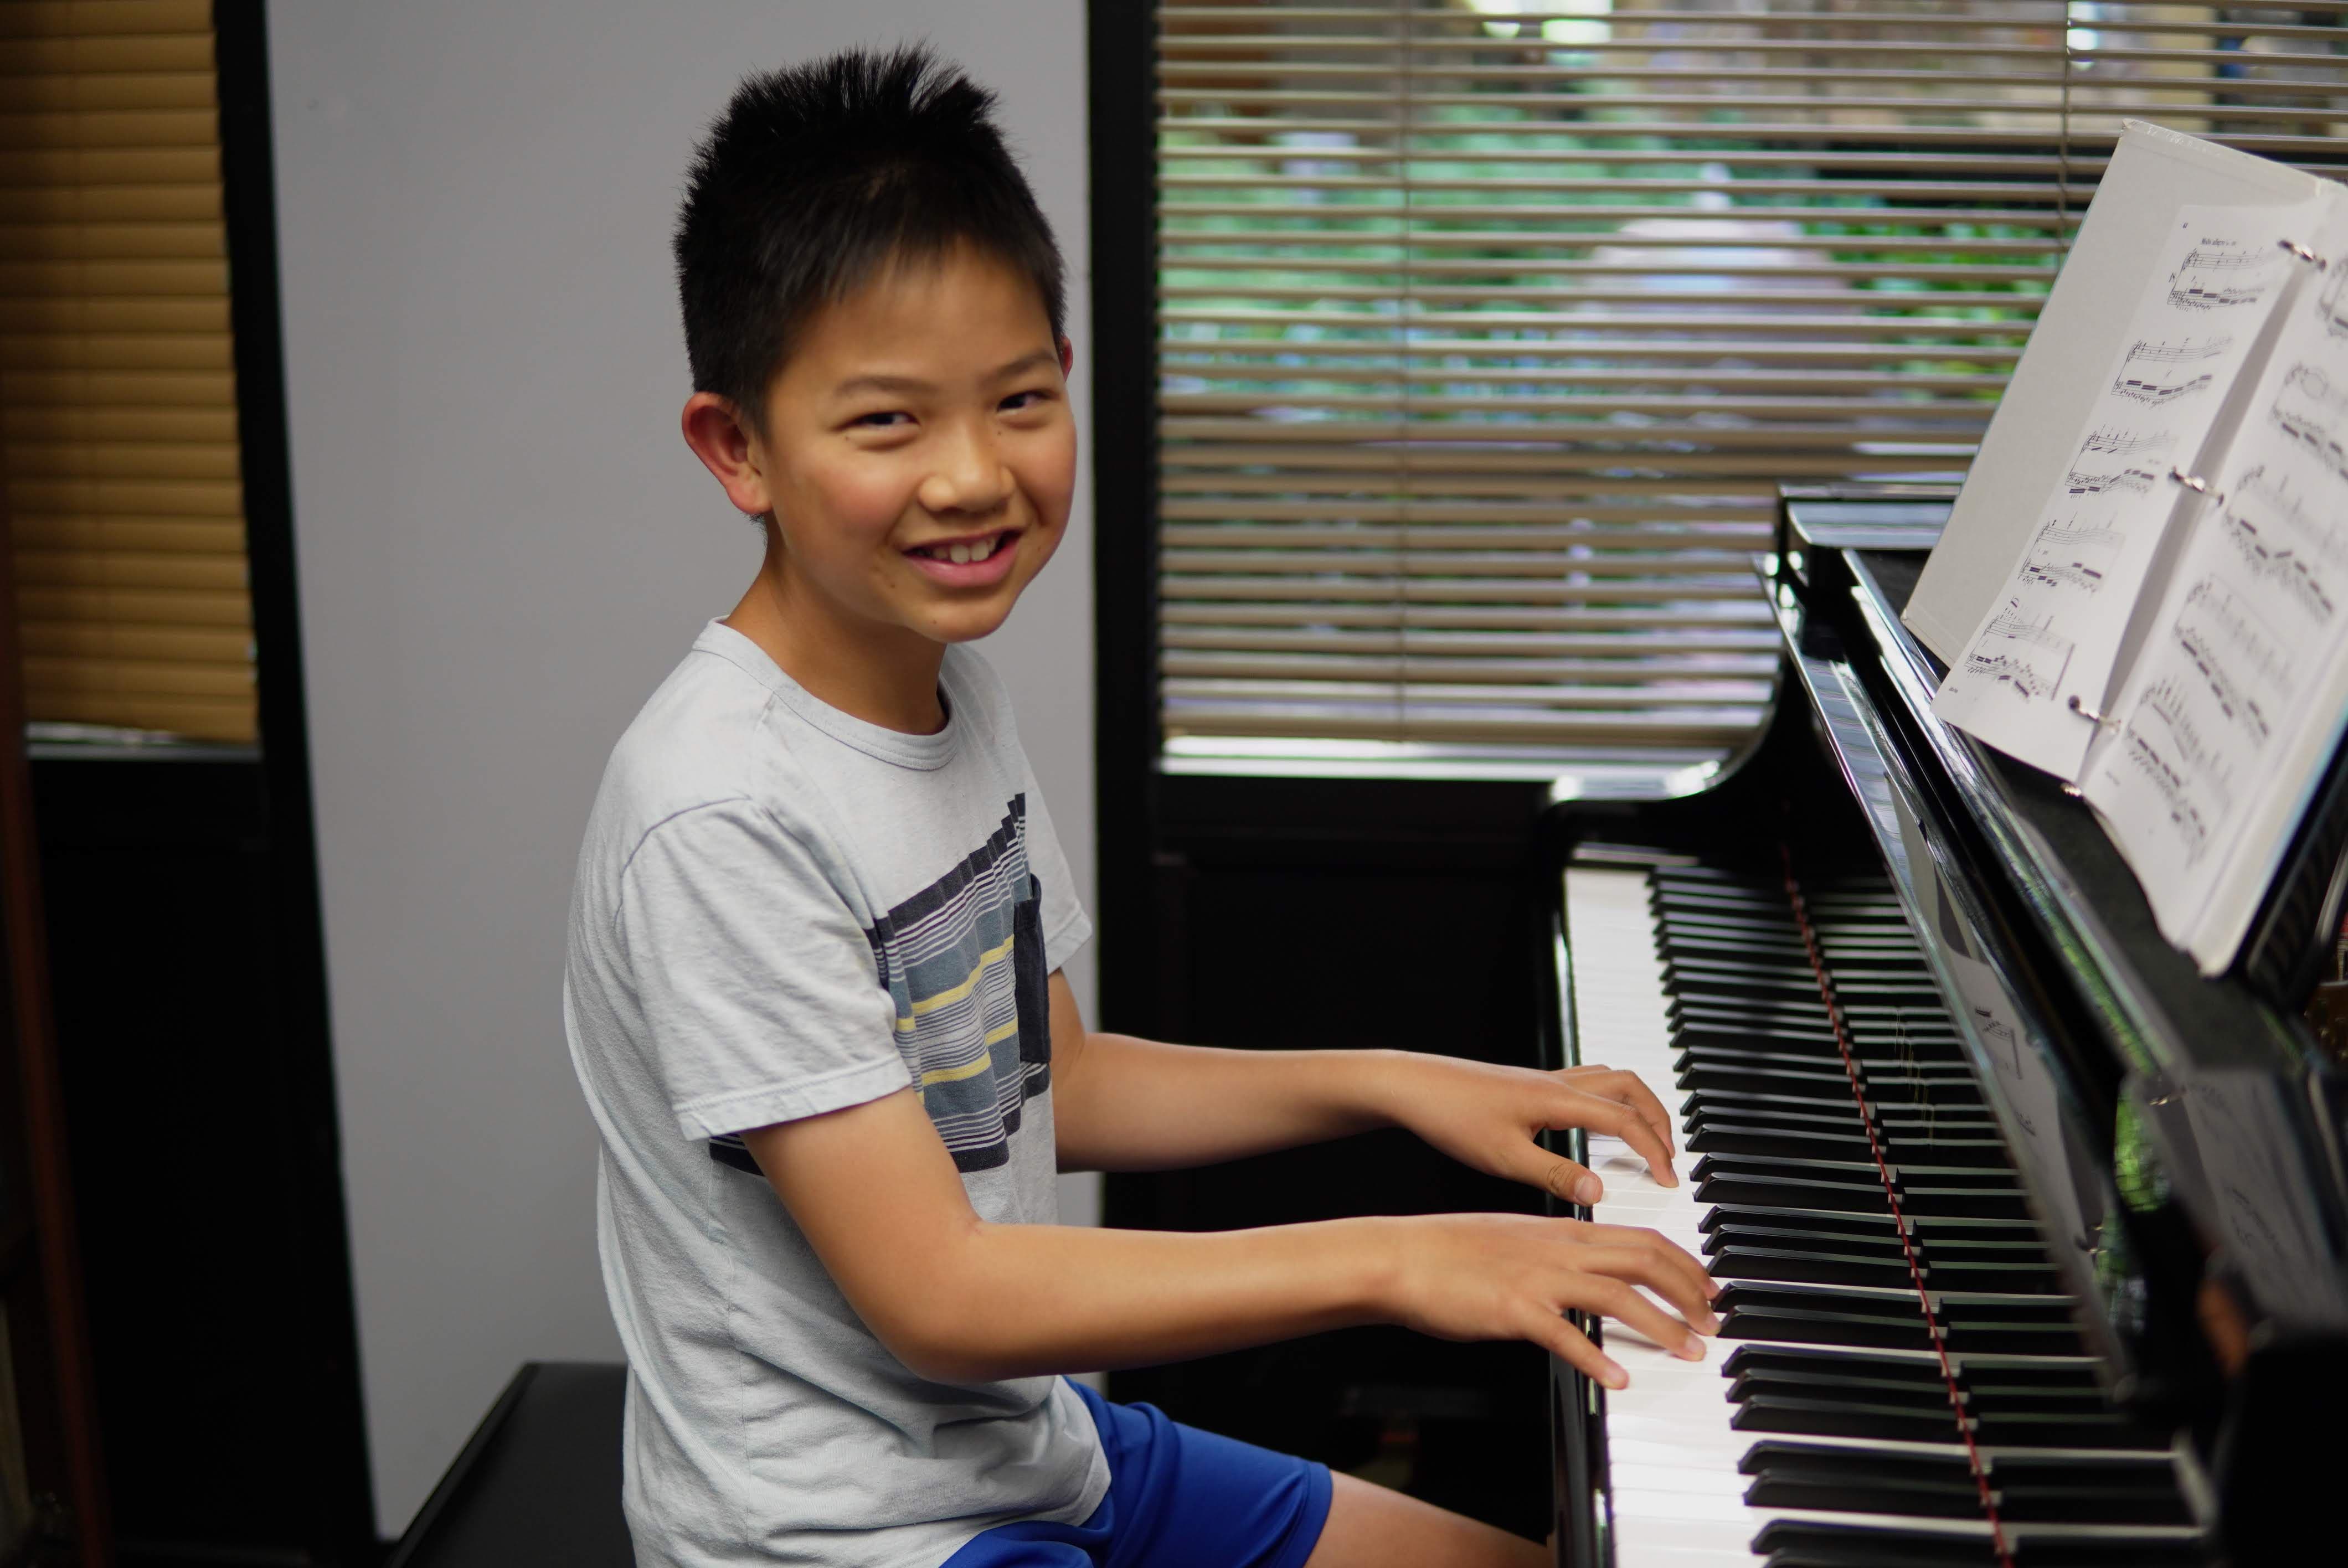 Smiling boy at piano